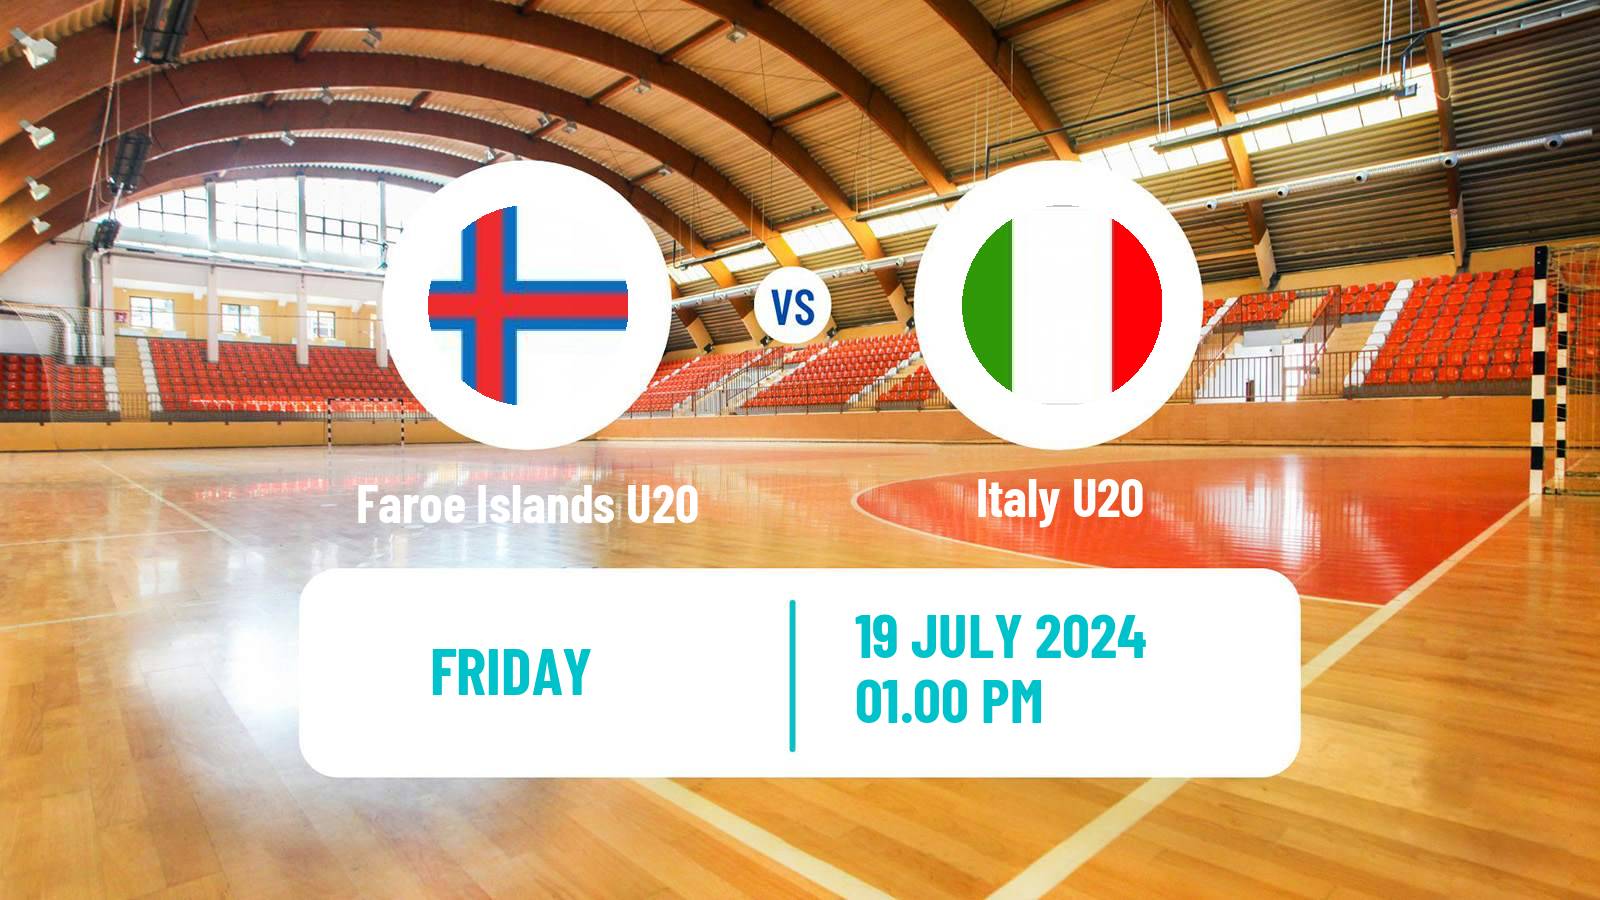 Handball European Championship U20 Handball Faroe Islands U20 - Italy U20